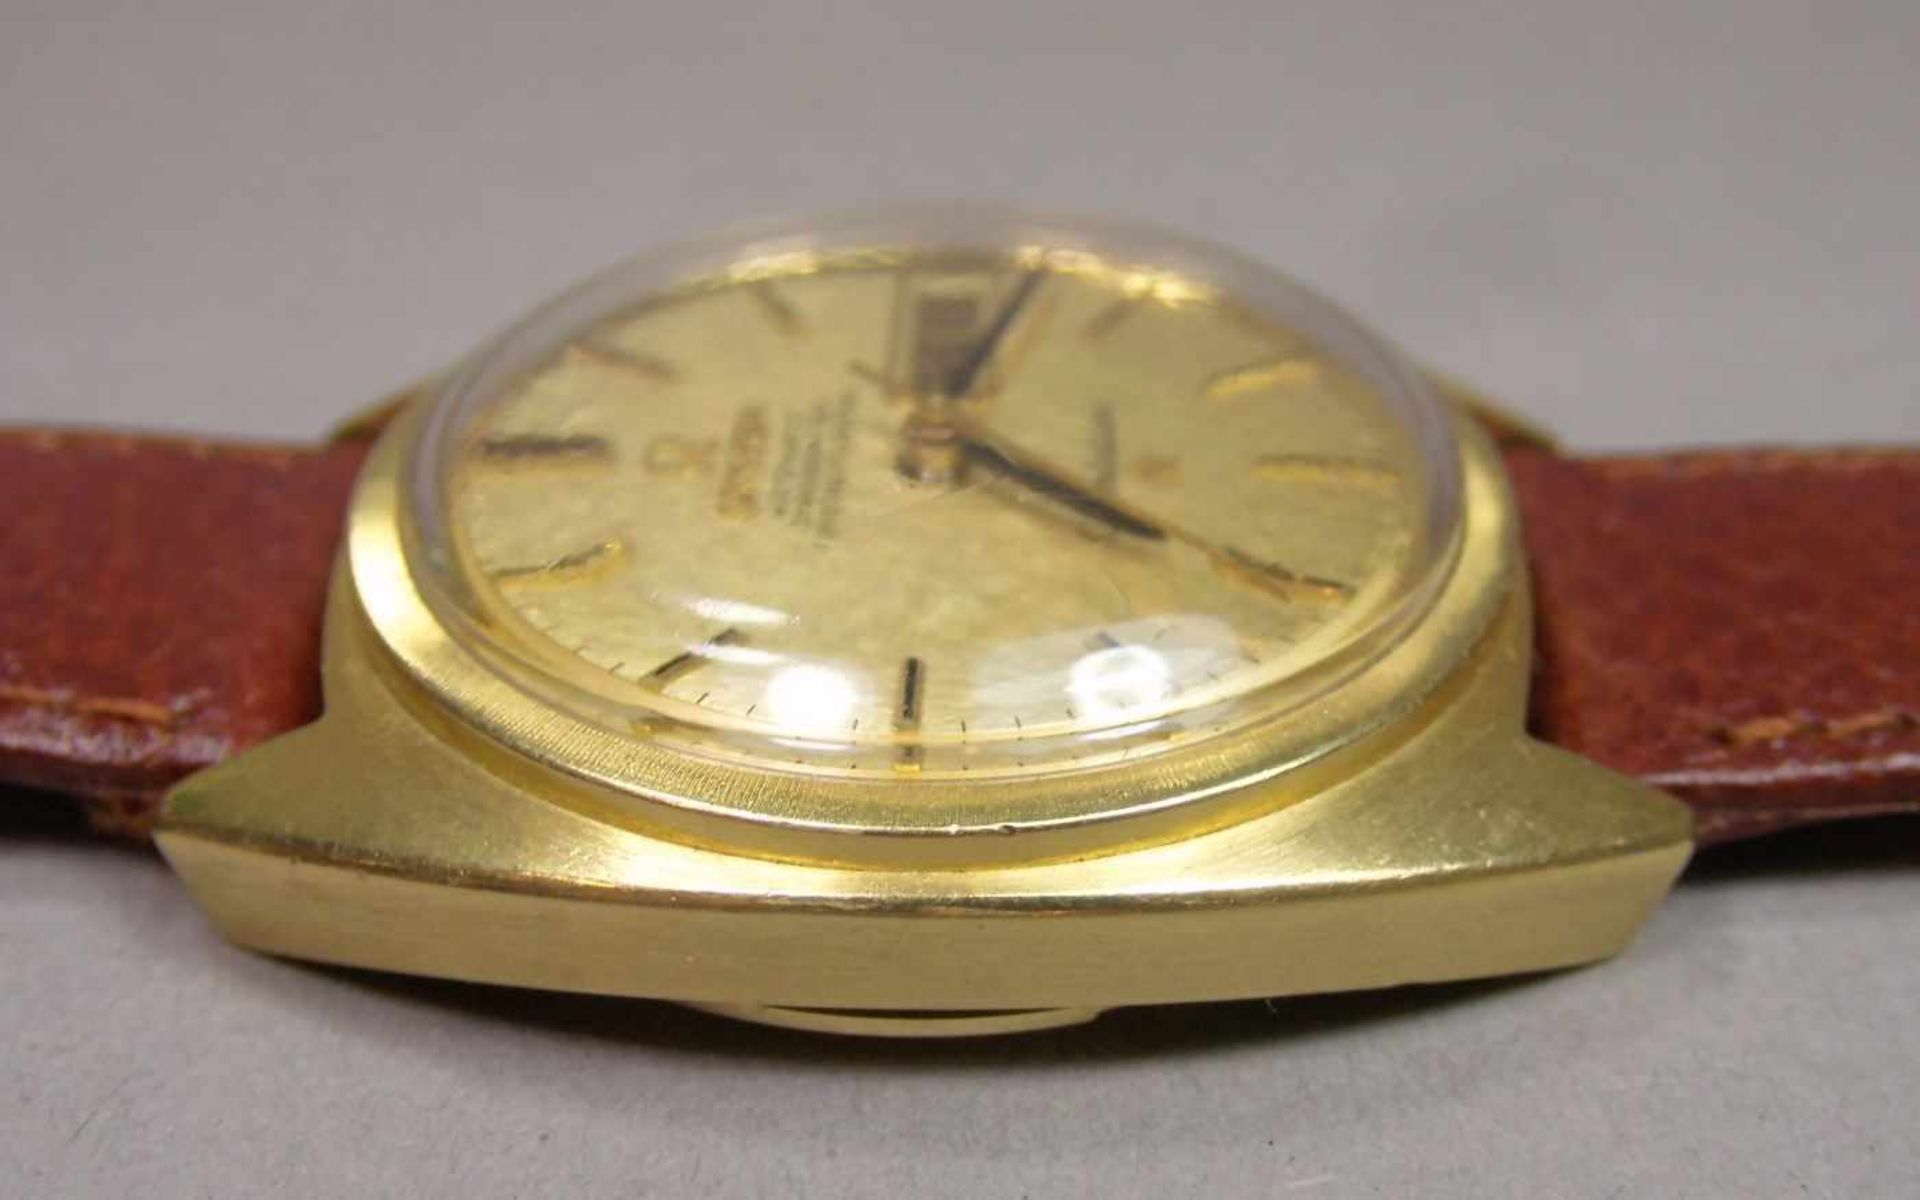 VINTAGE ARMBANDUHR: OMEGA CONSTELLATION / wristwatch, Herstellungsjahr 1968, Automatik-Uhr, - Bild 5 aus 11